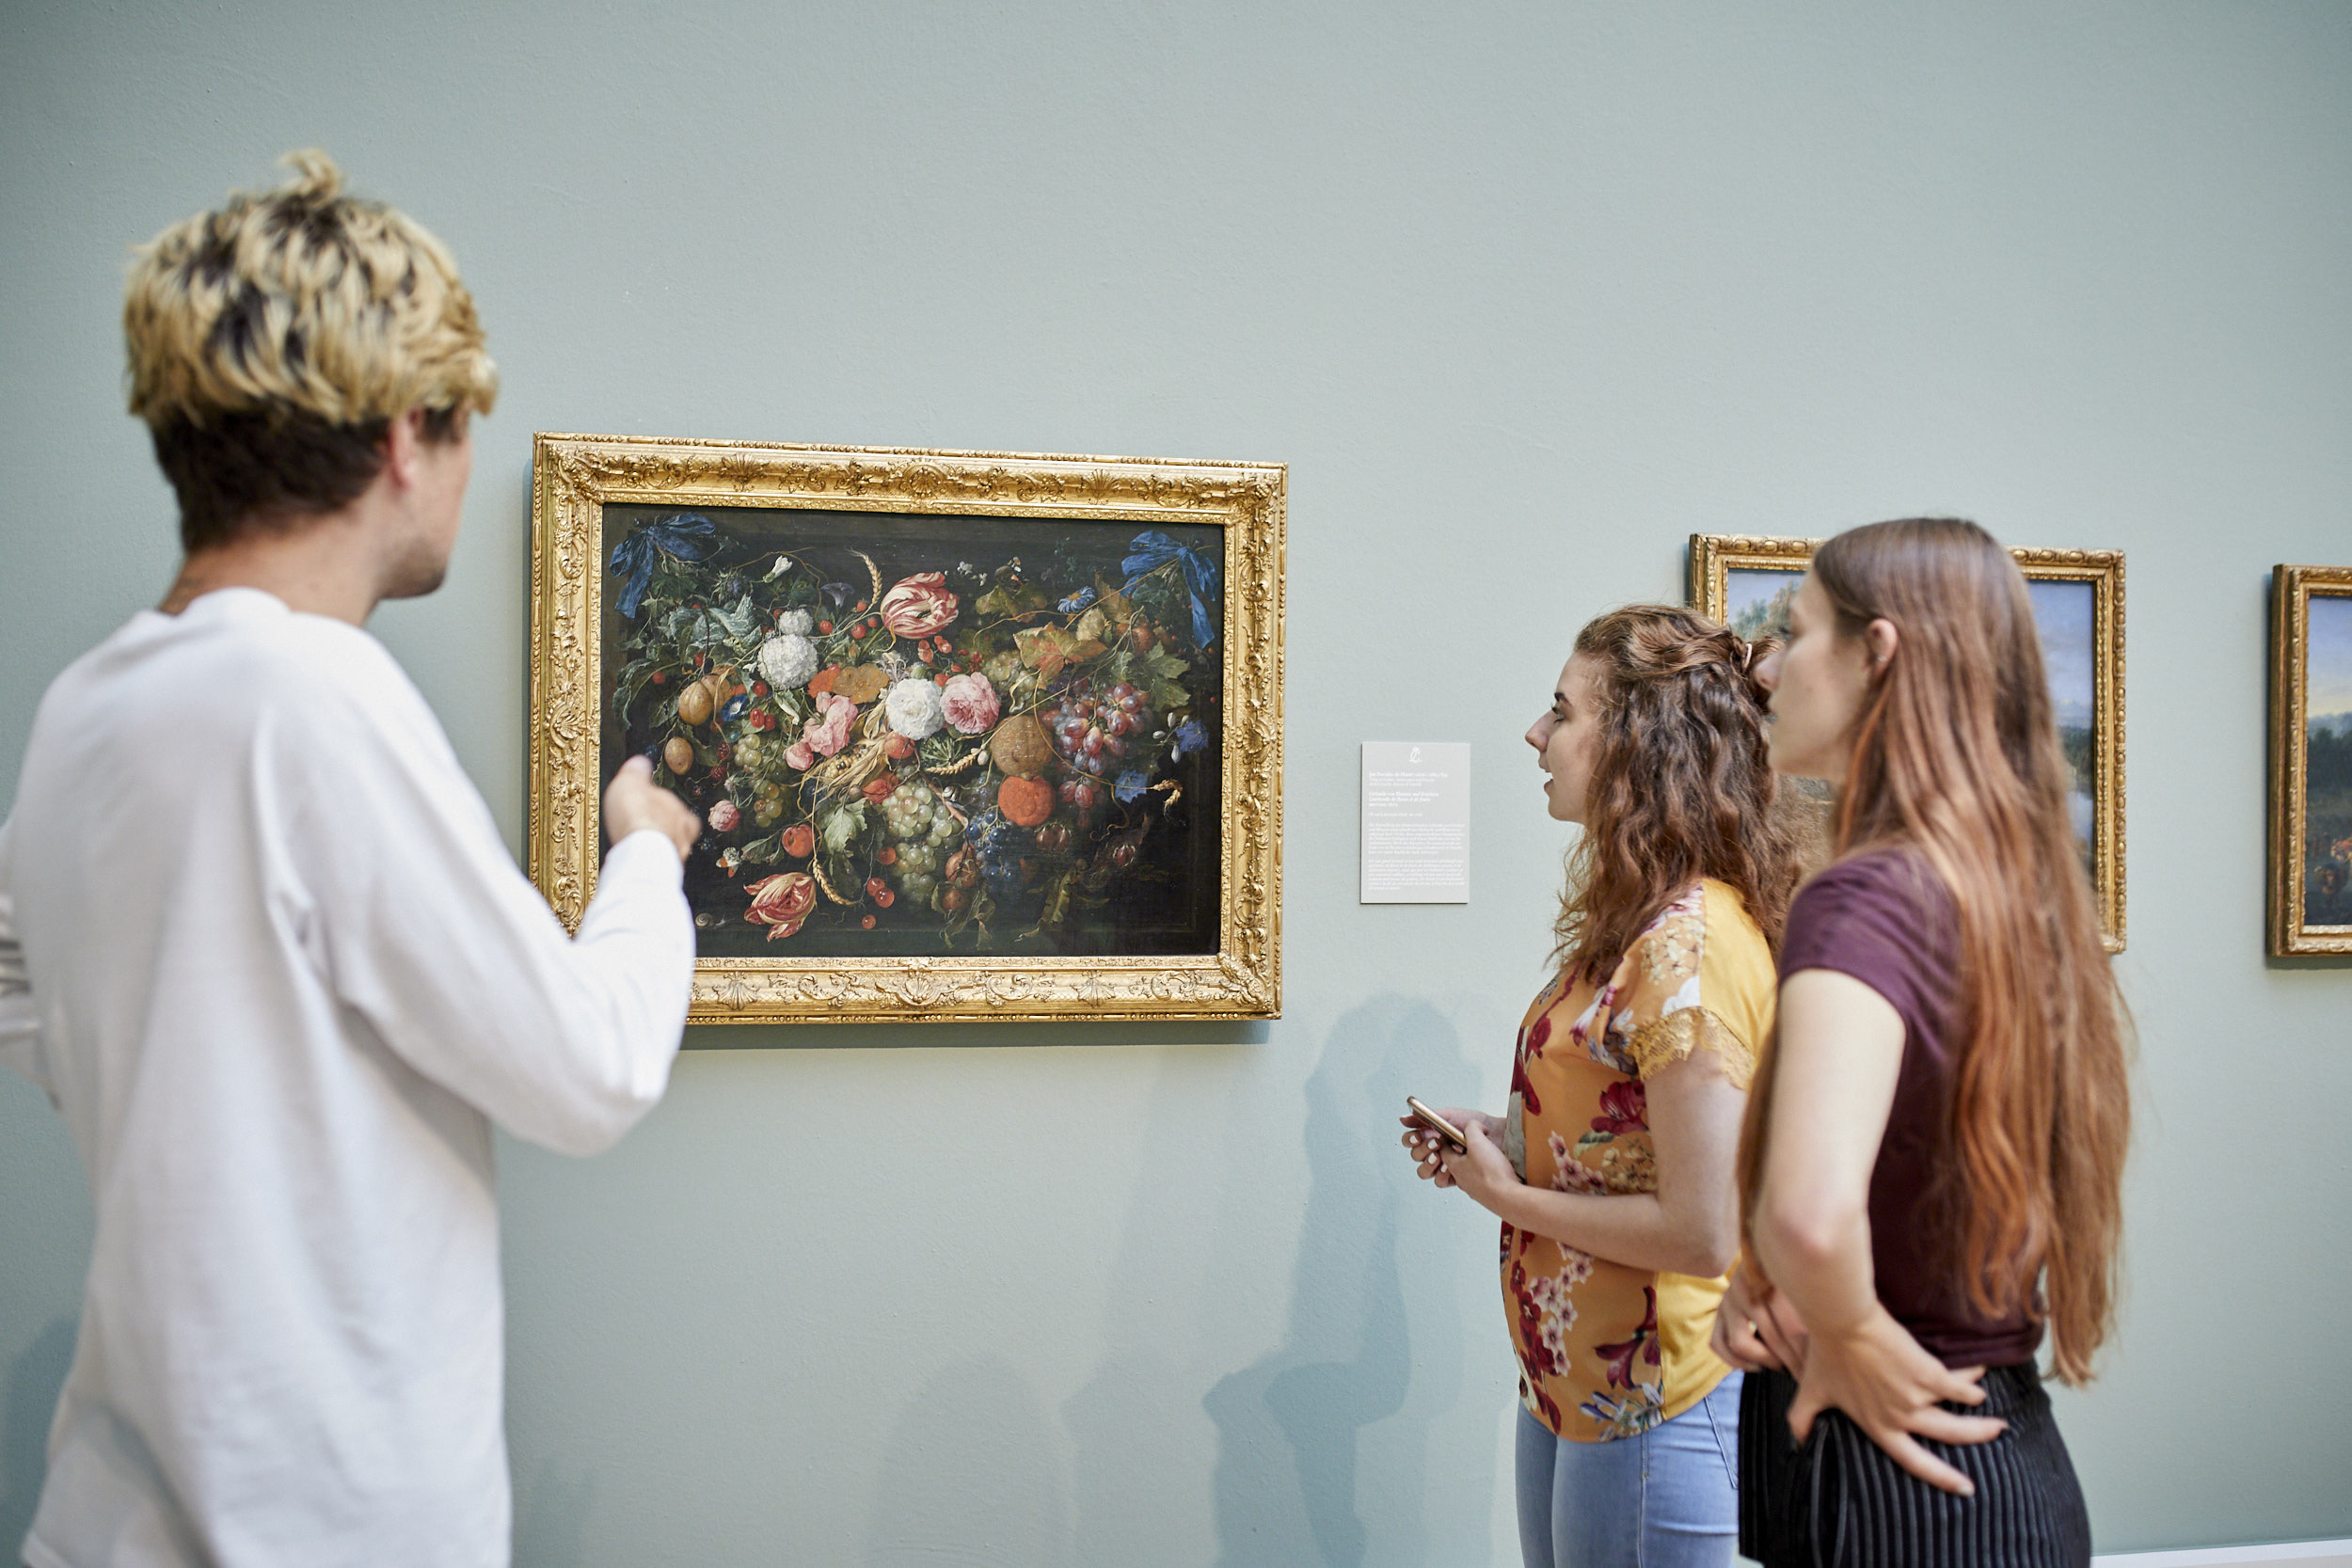 Blick in die Ausstellung, in der sich junge Personen umschauen und ein Blumenstillleben betrachten.